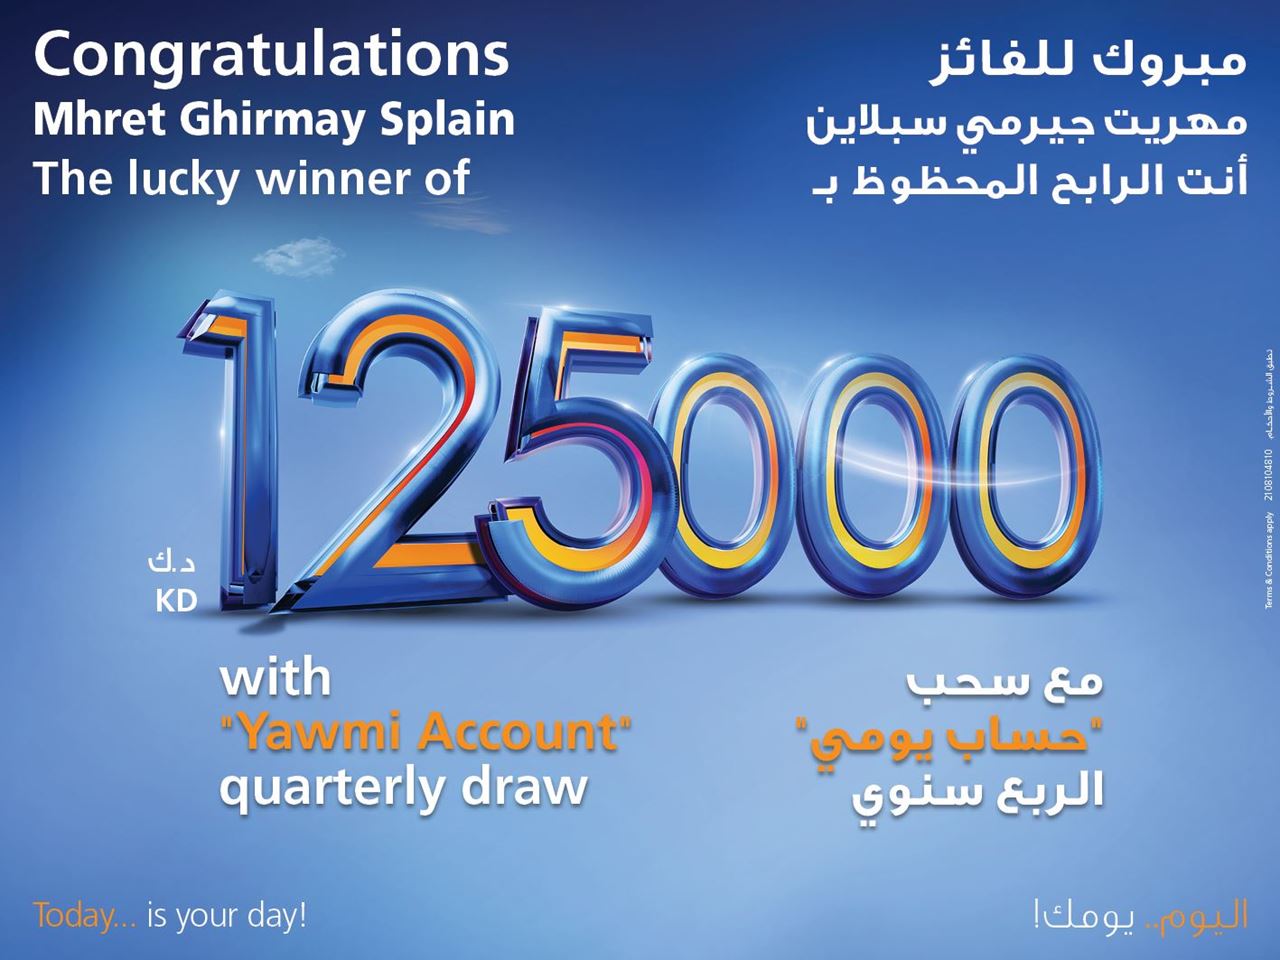 بنك برقان يعلن عن الفائز الجديد ب125,000 دينار كويتي في سحب يومي الربع سنوي